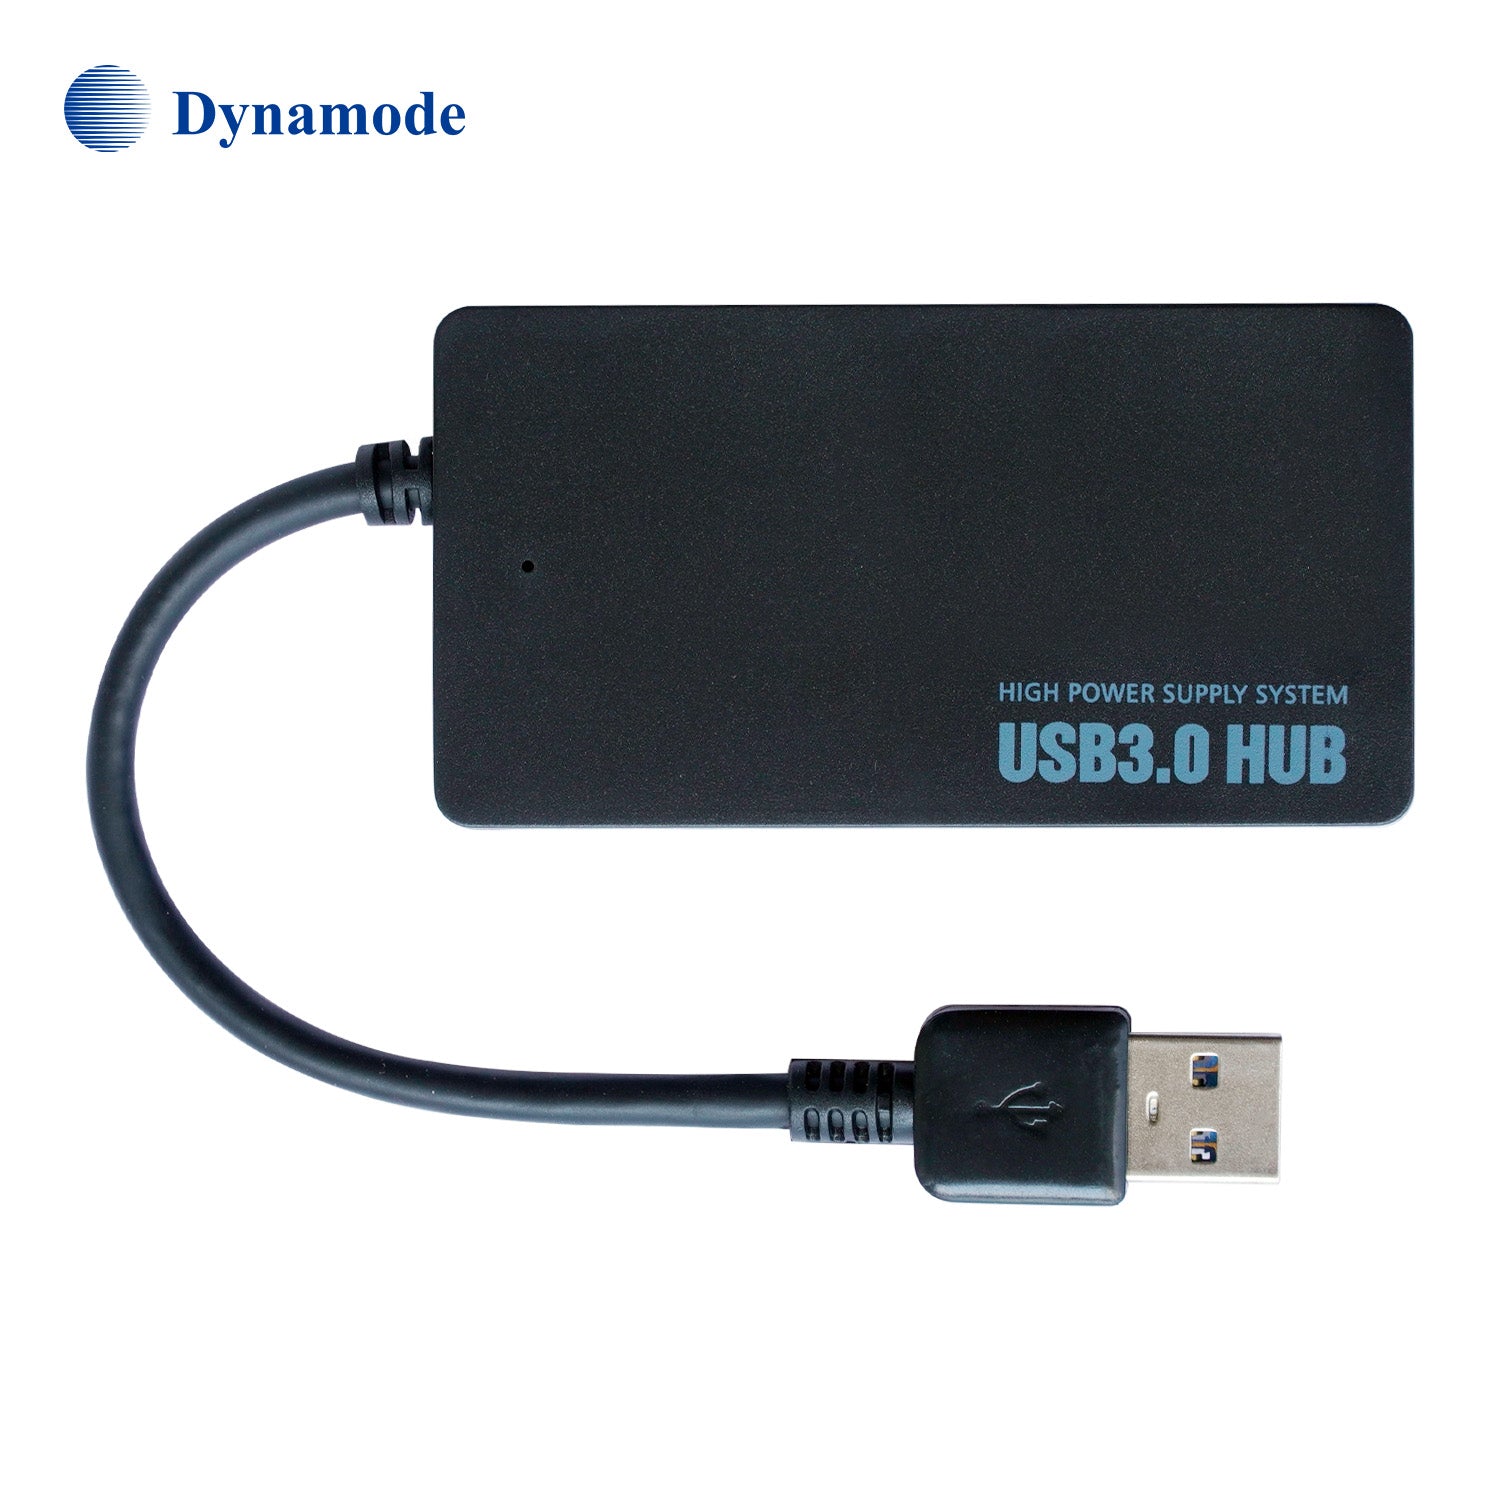 Premium USB expansion